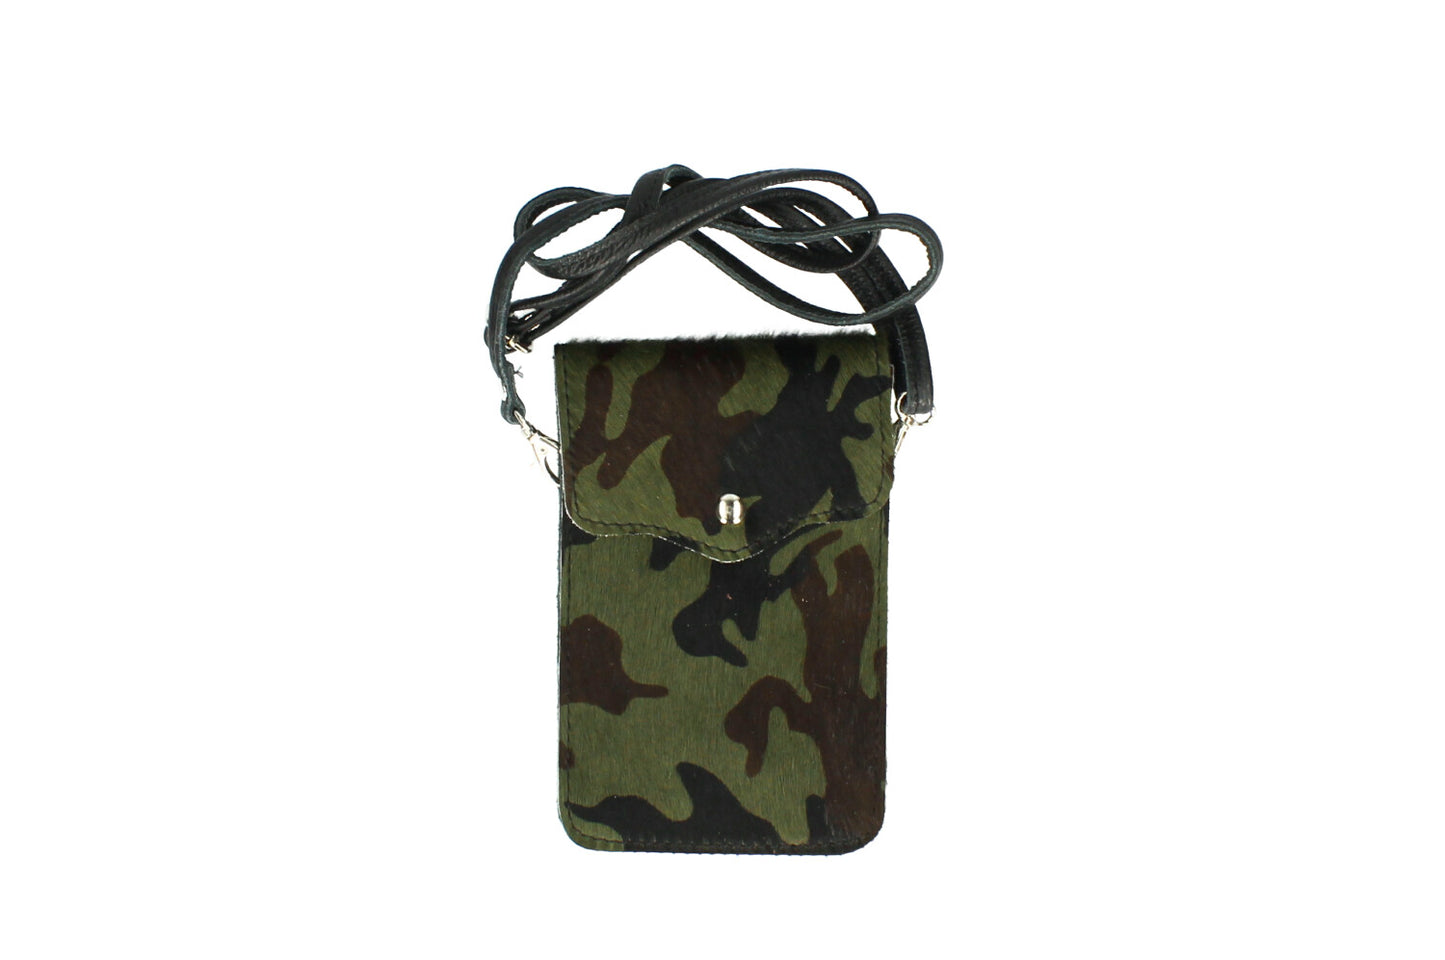 The Leather Cross Body Mobile Bag (Animal print)